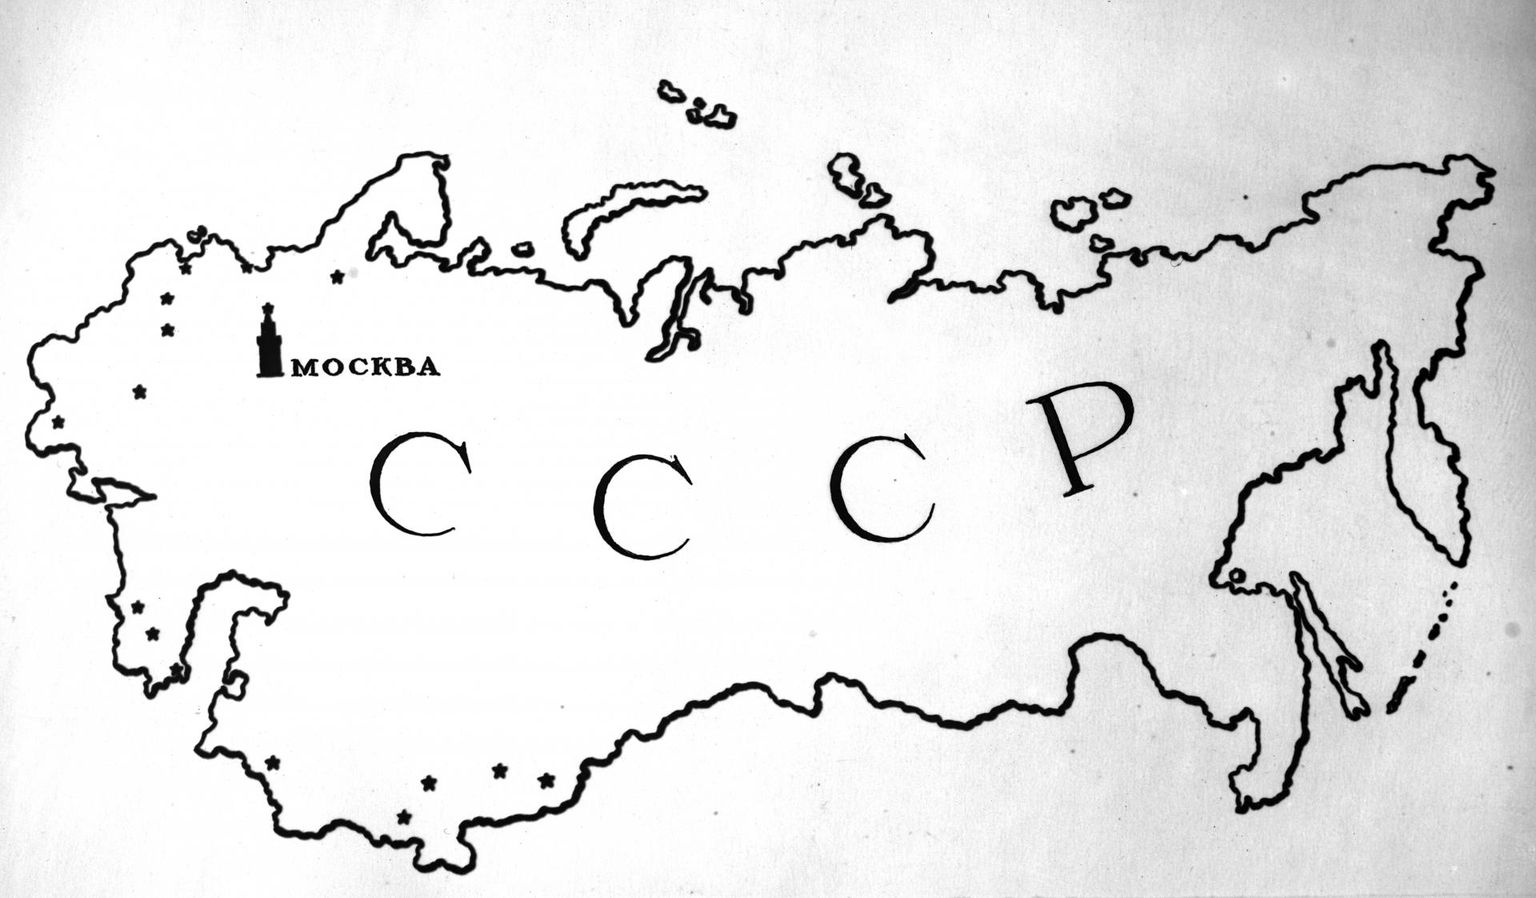 Nõukogude Liit moodustati 1922. aastal ning saadeti laiali 1991. aasta lõpus.